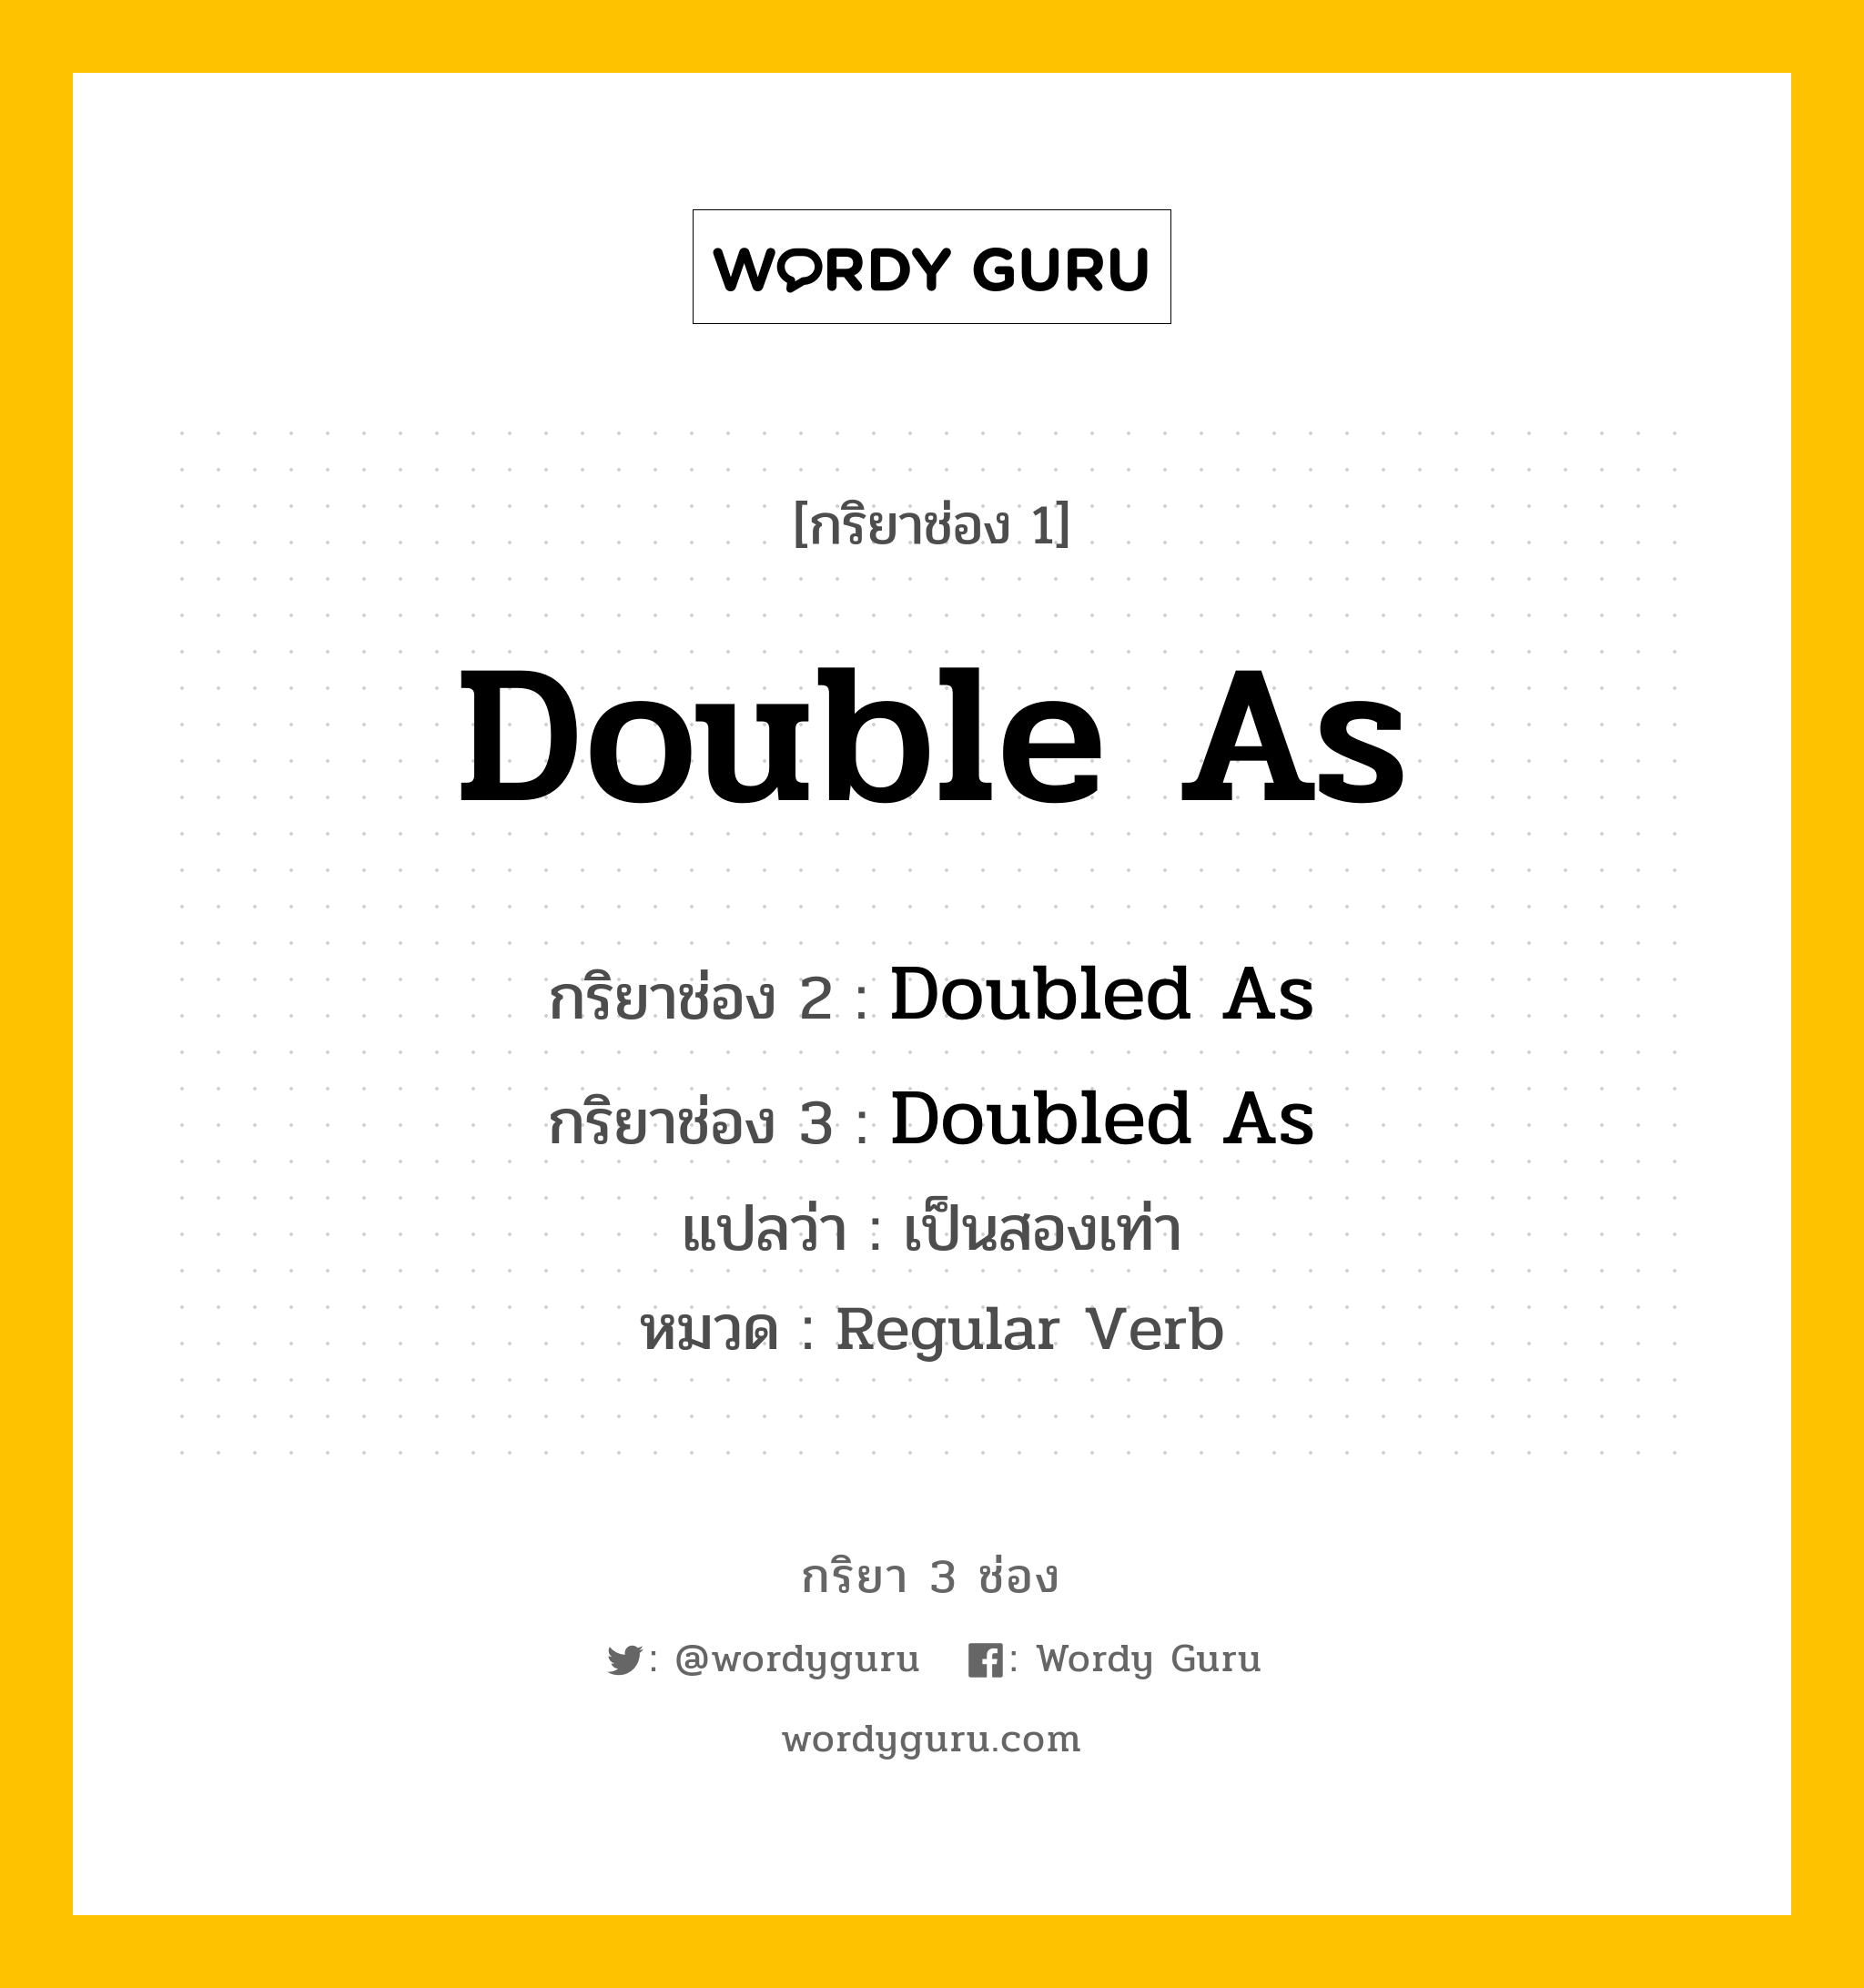 กริยา 3 ช่อง: Double As ช่อง 2 Double As ช่อง 3 คืออะไร, กริยาช่อง 1 Double As กริยาช่อง 2 Doubled As กริยาช่อง 3 Doubled As แปลว่า เป็นสองเท่า หมวด Regular Verb หมวด Regular Verb